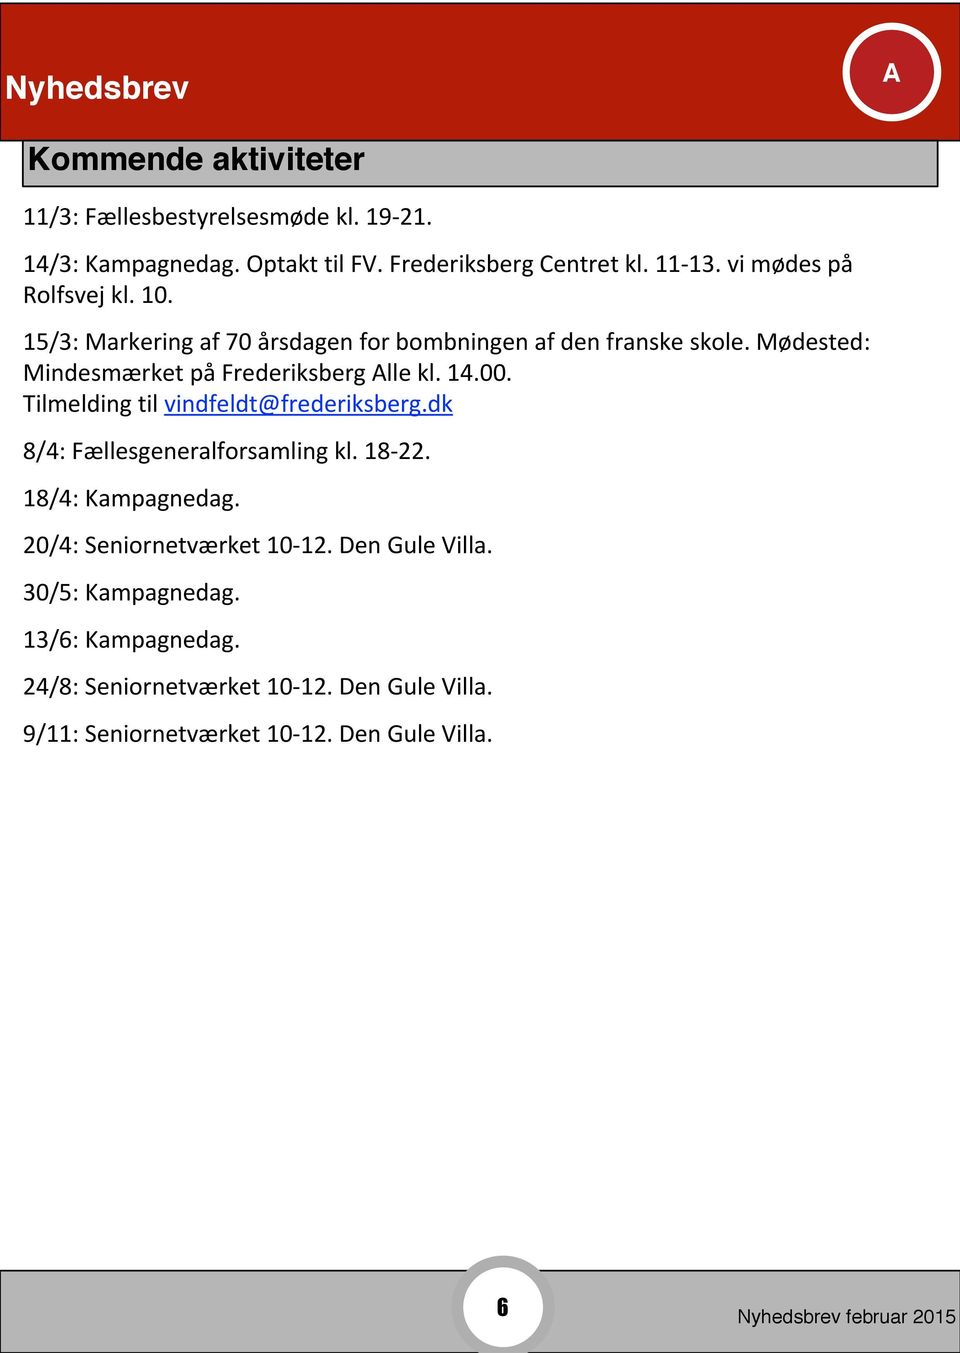 Mødested: Mindesmærket på Frederiksberg lle kl. 14.00. Tilmelding til vindfeldt@frederiksberg.dk 8/4: Fællesgeneralforsamling kl. 18-22.